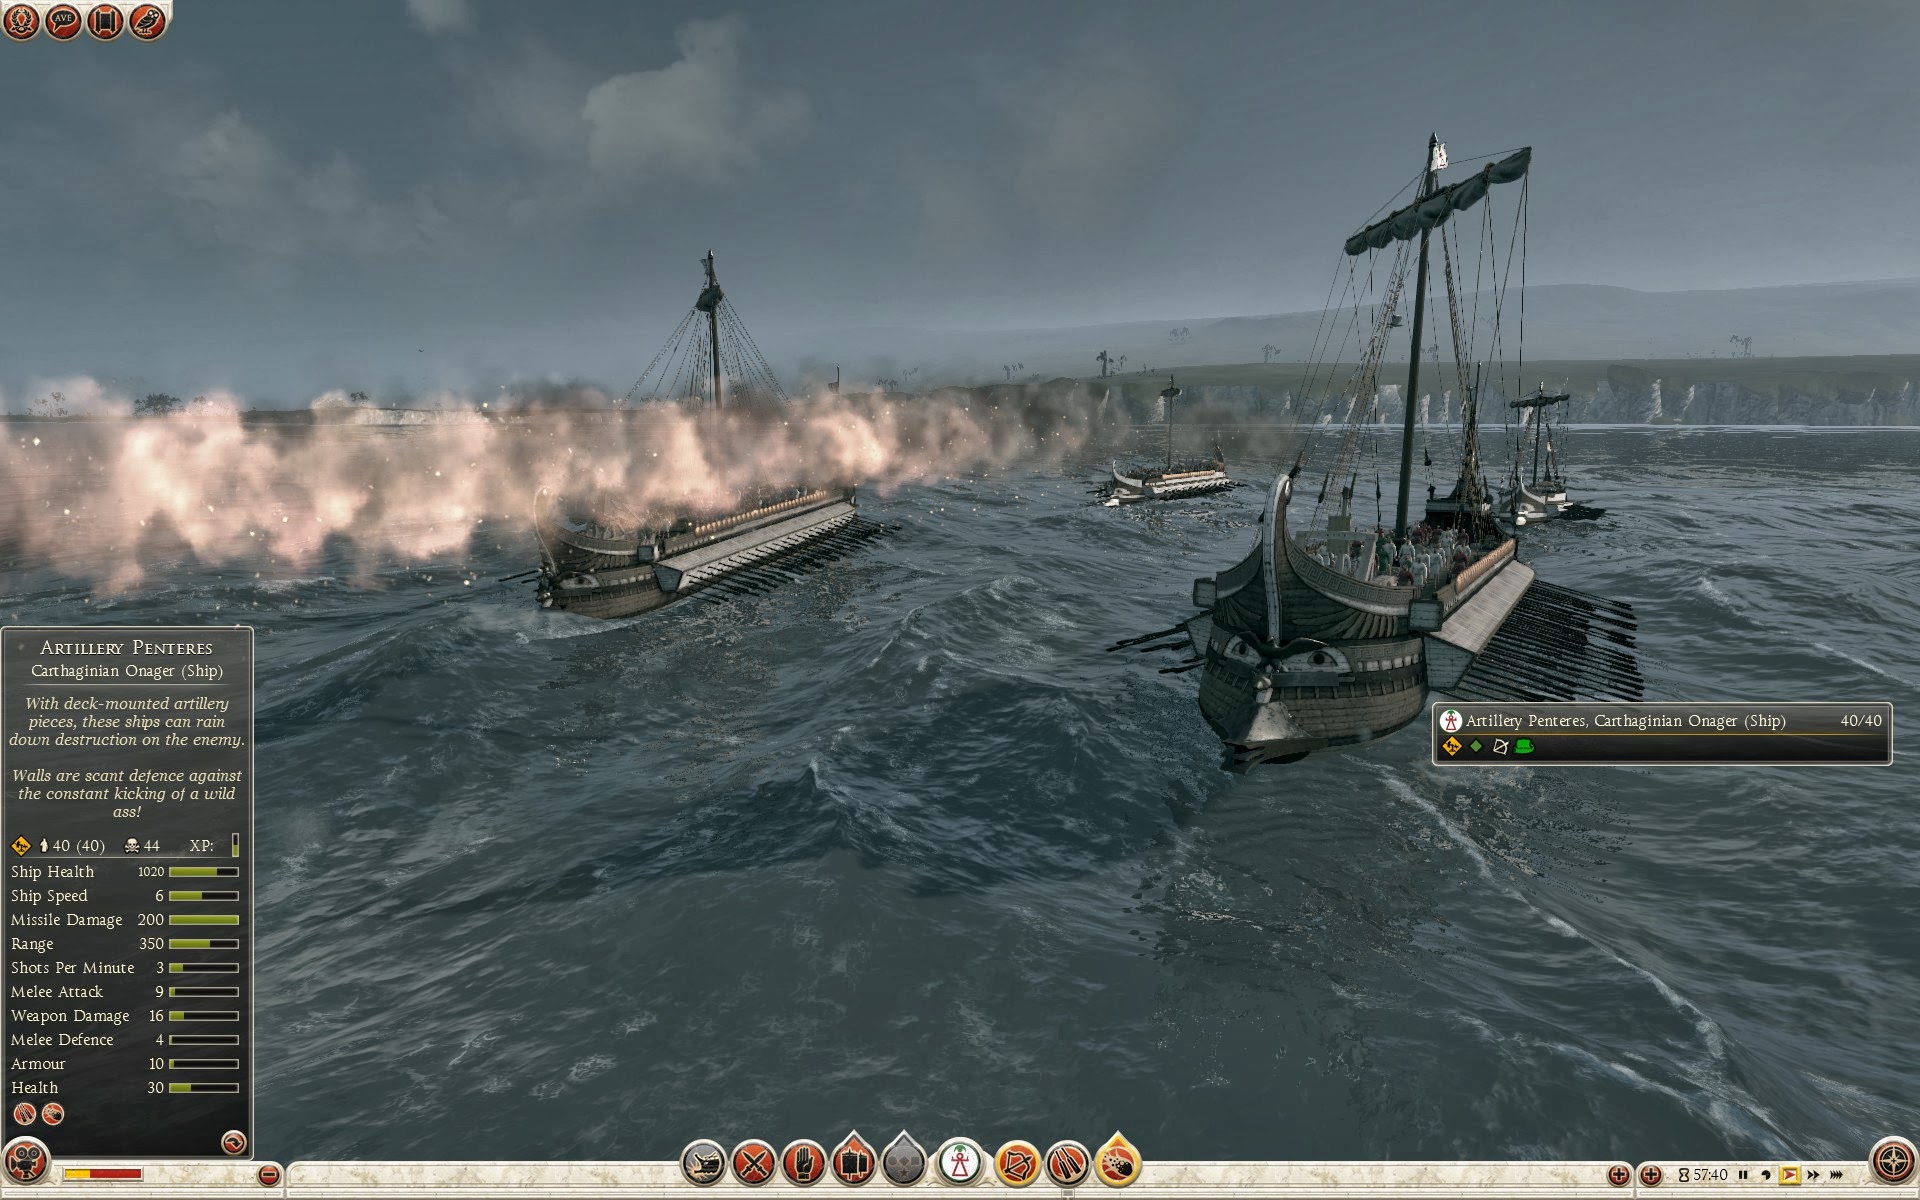 Penteres de artillería - Onagro cartaginés (barco)